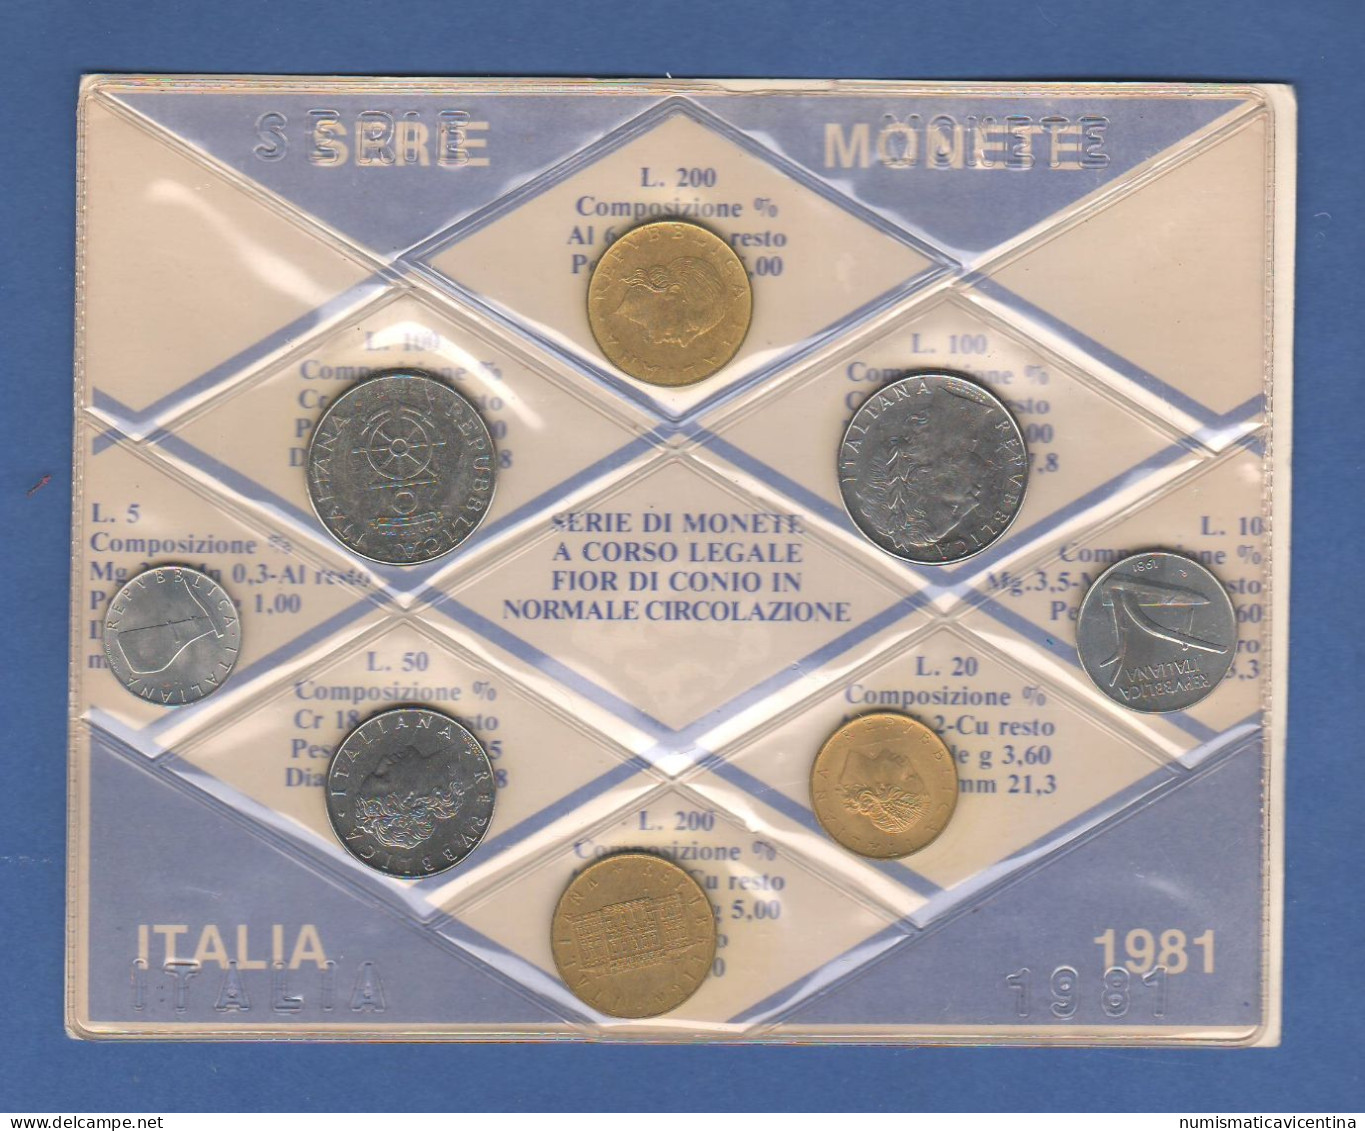 ITALIA 1981 Serie 8 Monete 5 10 20 50 100 100 200 200 Lire FDC UNC Italy Coin Set Private Issues Emissioni Private - Set Fior Di Conio